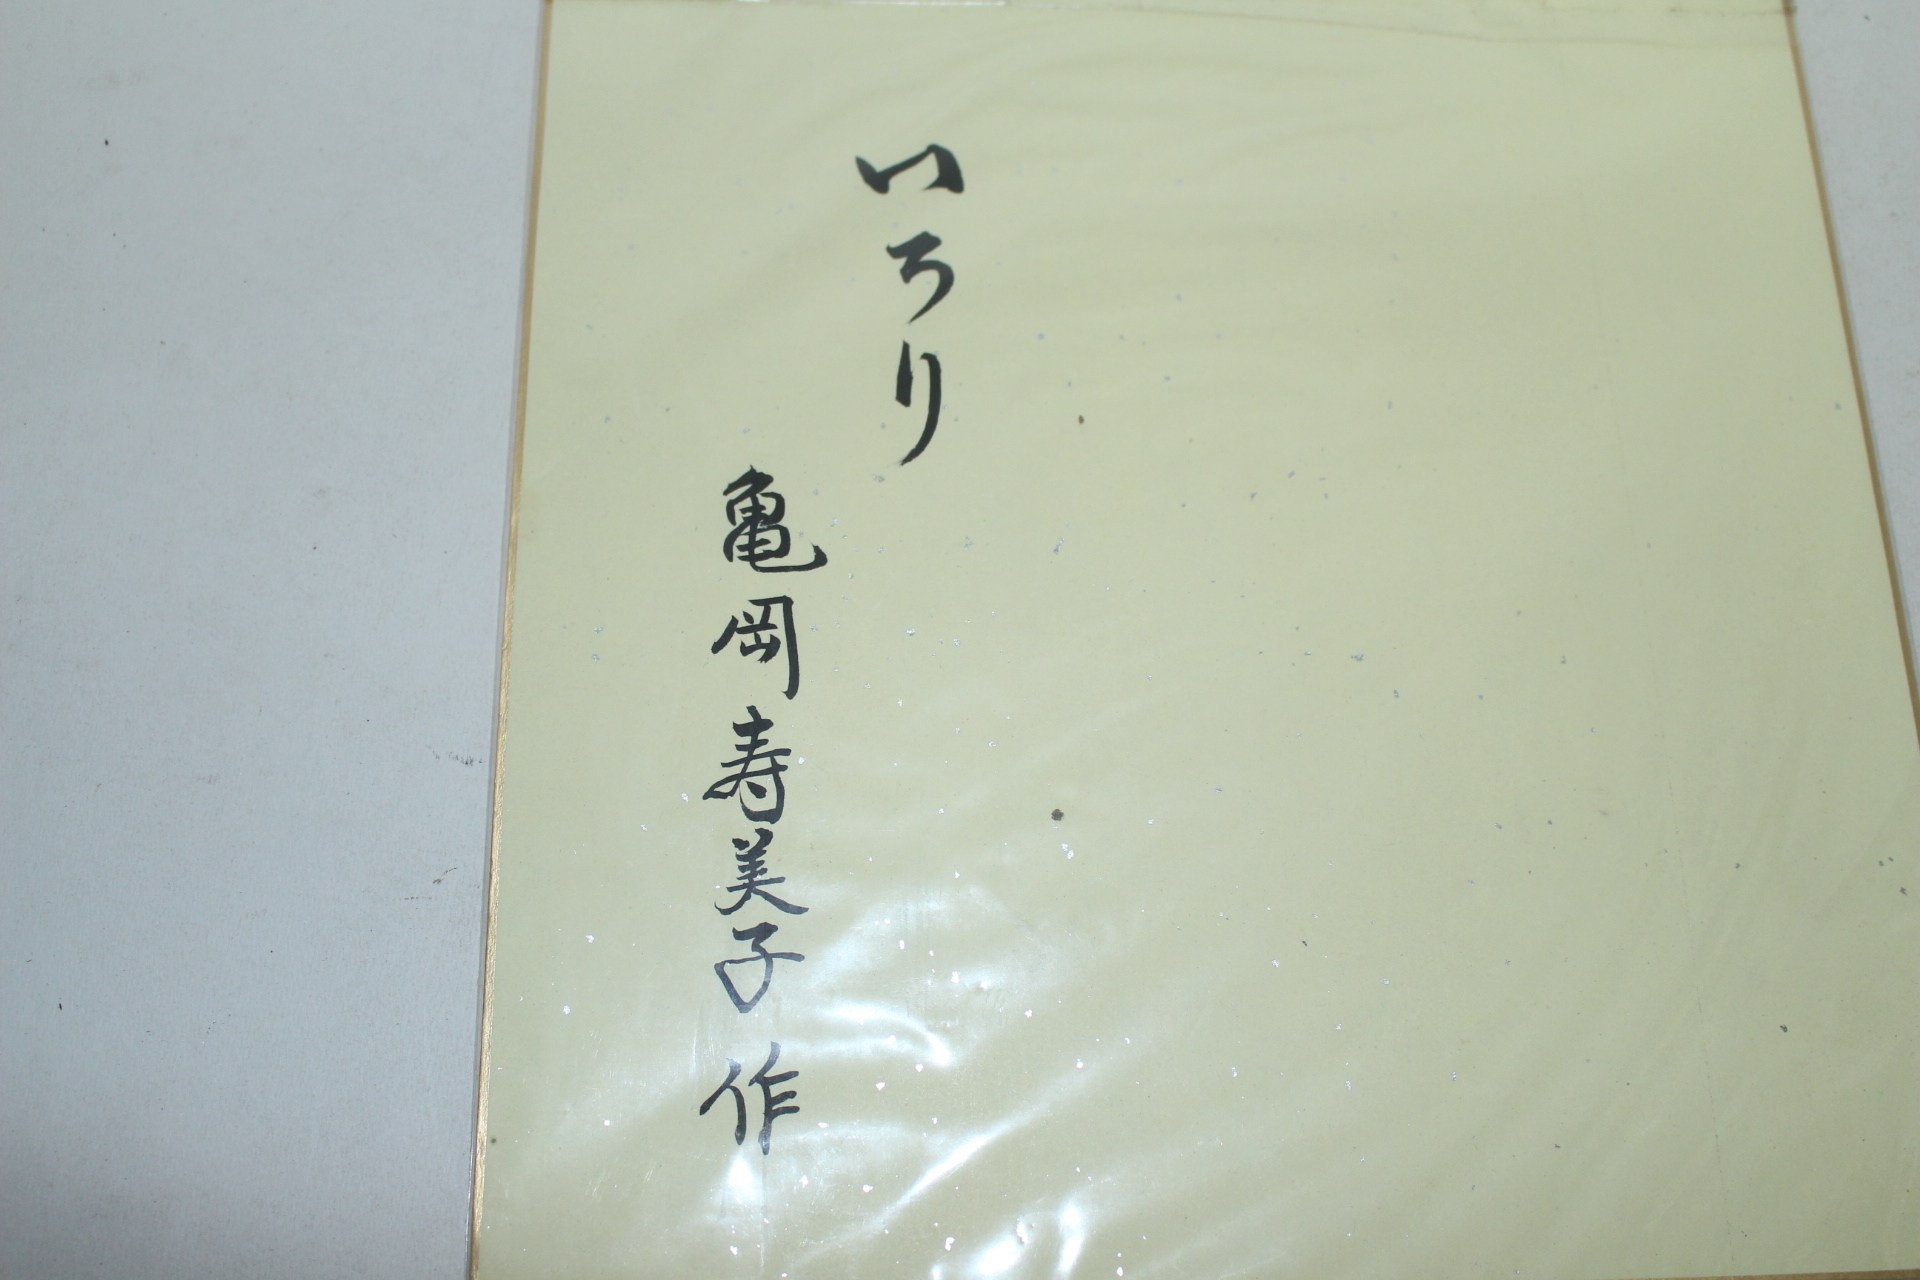 일본화지를 붙여만든 종이공예그림